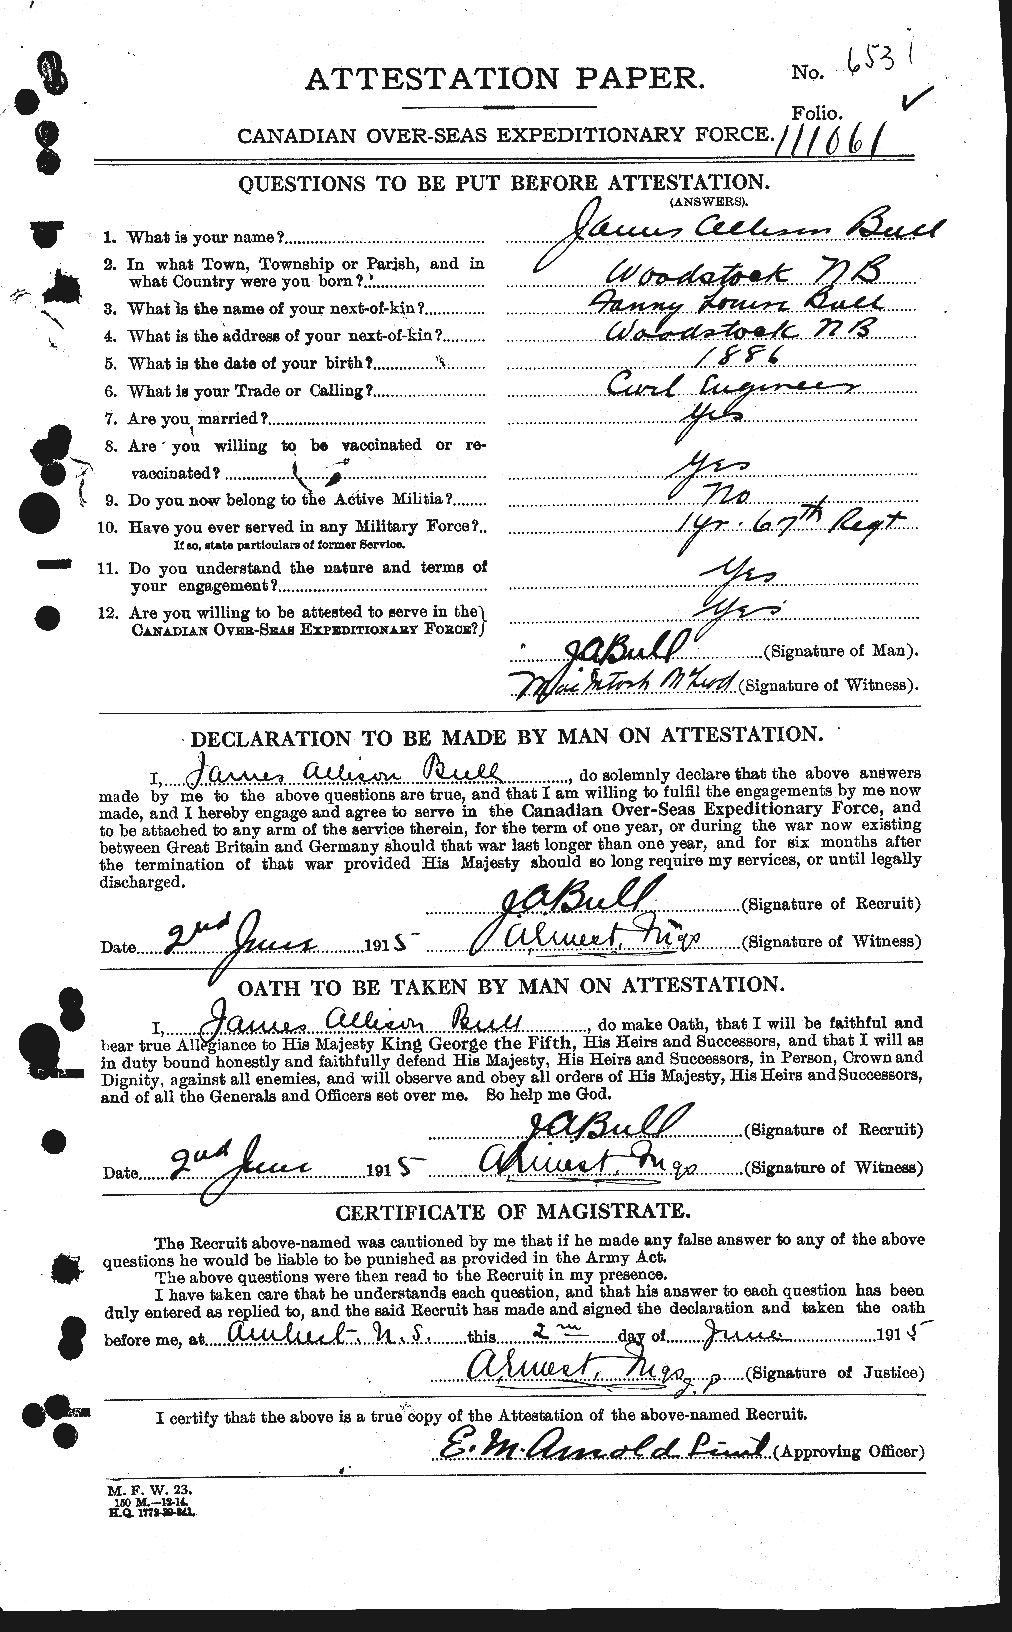 Dossiers du Personnel de la Première Guerre mondiale - CEC 273416a